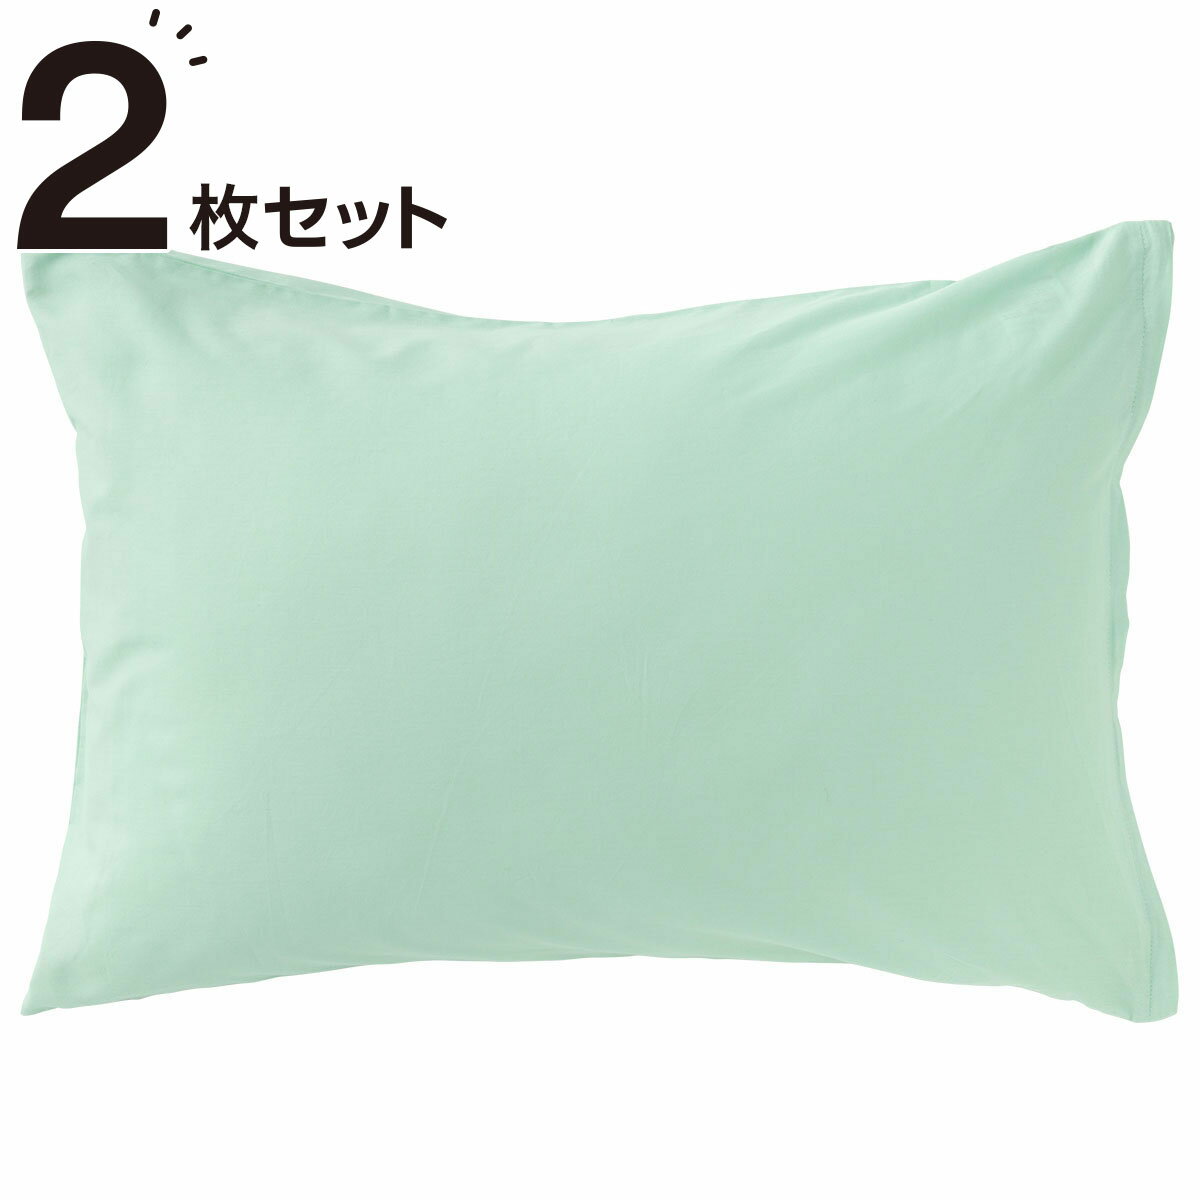 ニトリの枕カバー 2枚セット(パレット3 LGR2)   【1年保証】(布団・寝具)